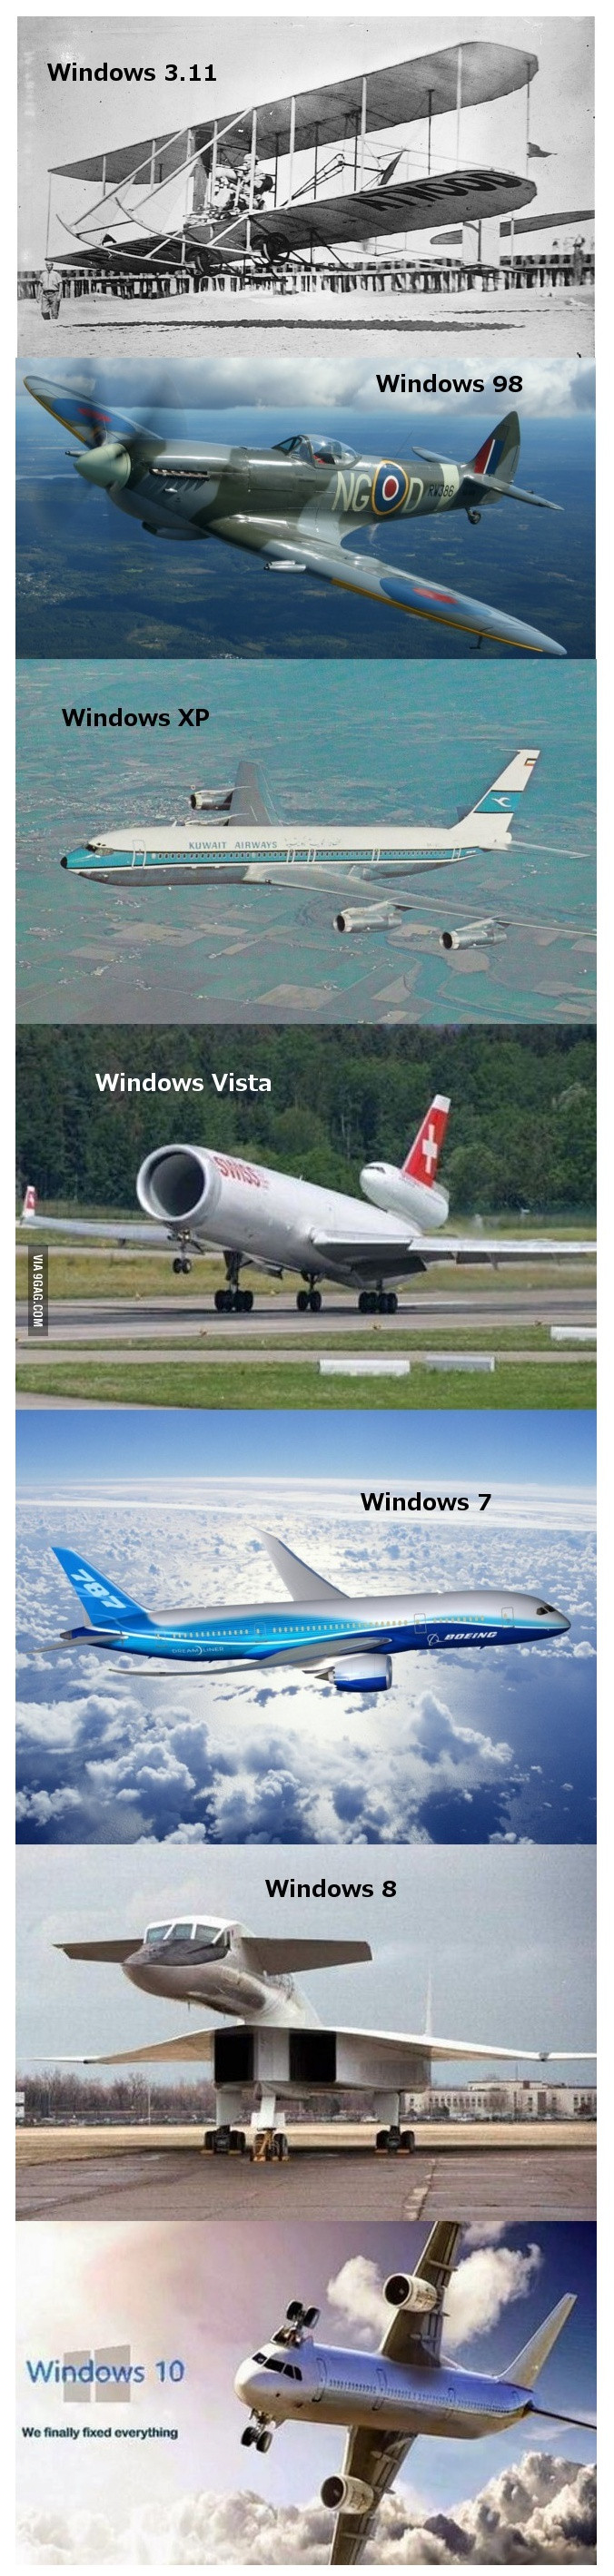 윈도우 버전업 쉽게 이해하기.jpg